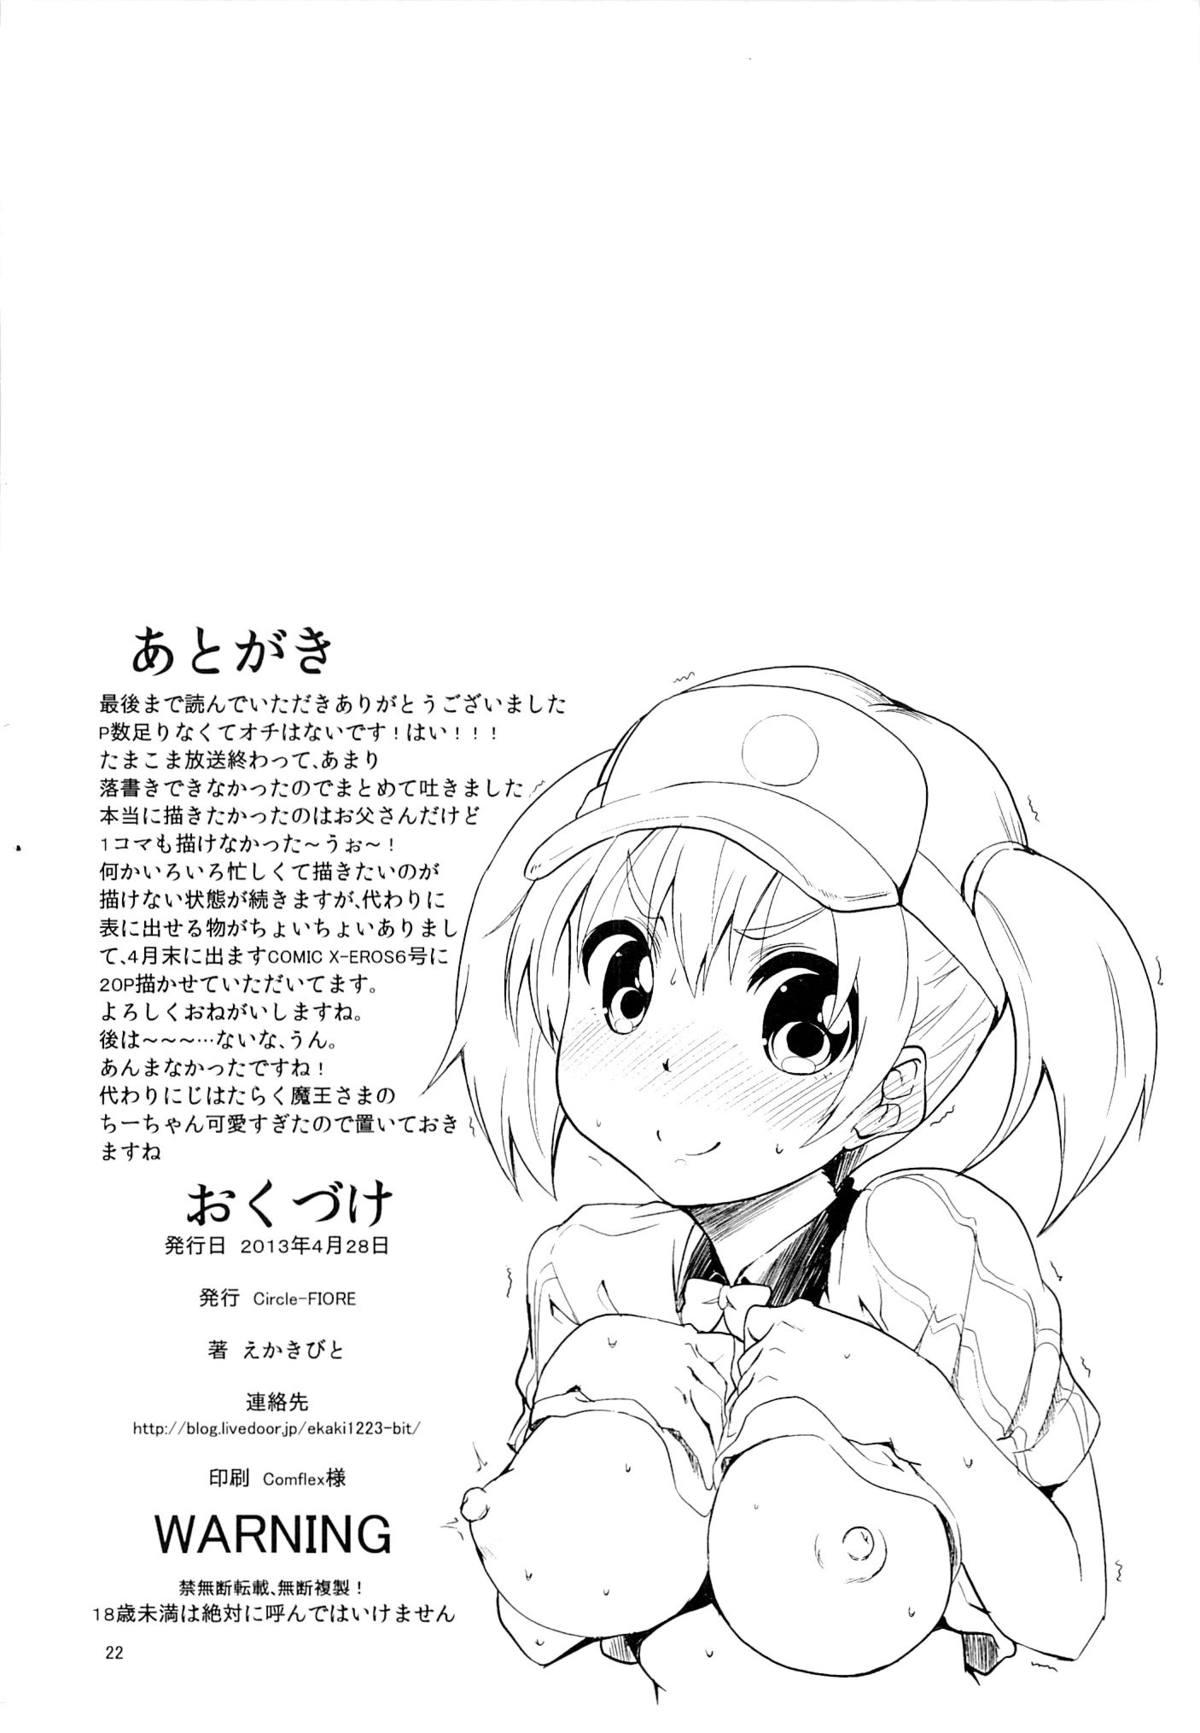 Dotado Korekara wa Anko demo Iiyo? - Tamako market Milfsex - Page 21